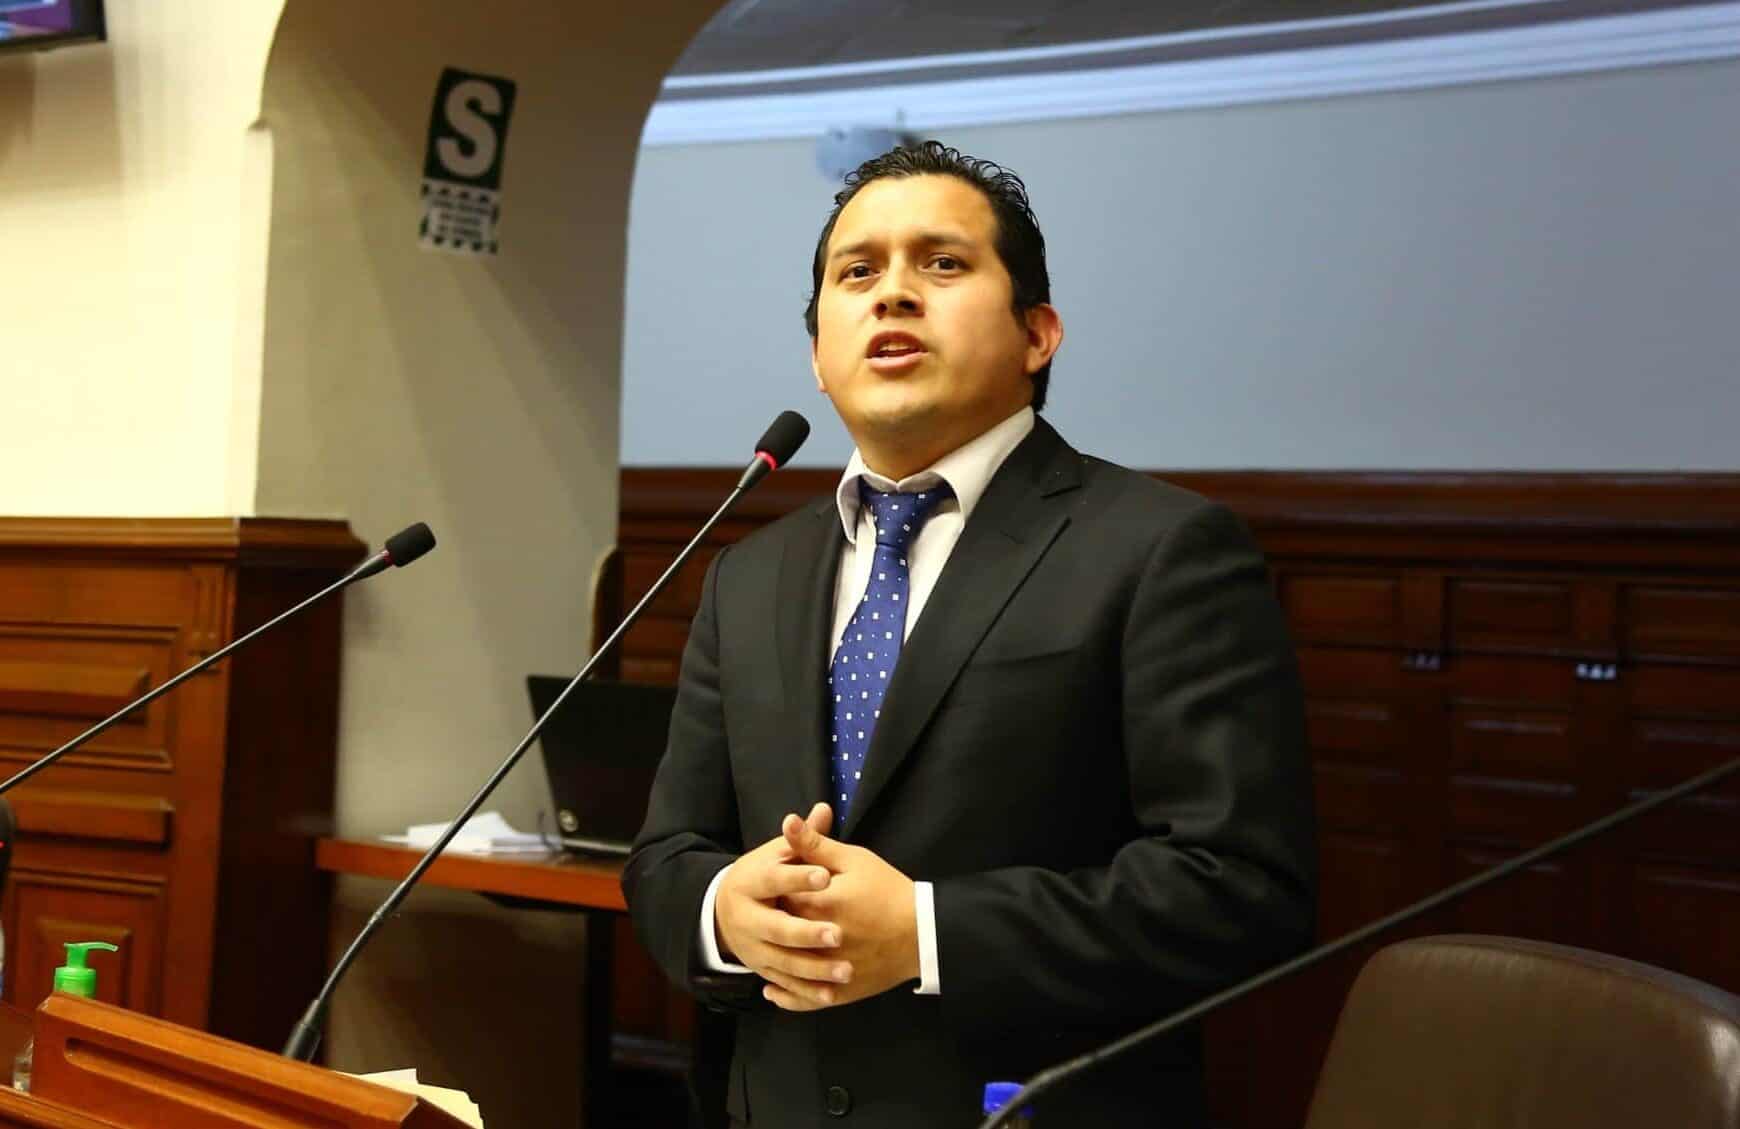 Candidato a teniente alcalde de Lima por Podemos era enlace entre su padre y el investigado Elías Cuba, según audios